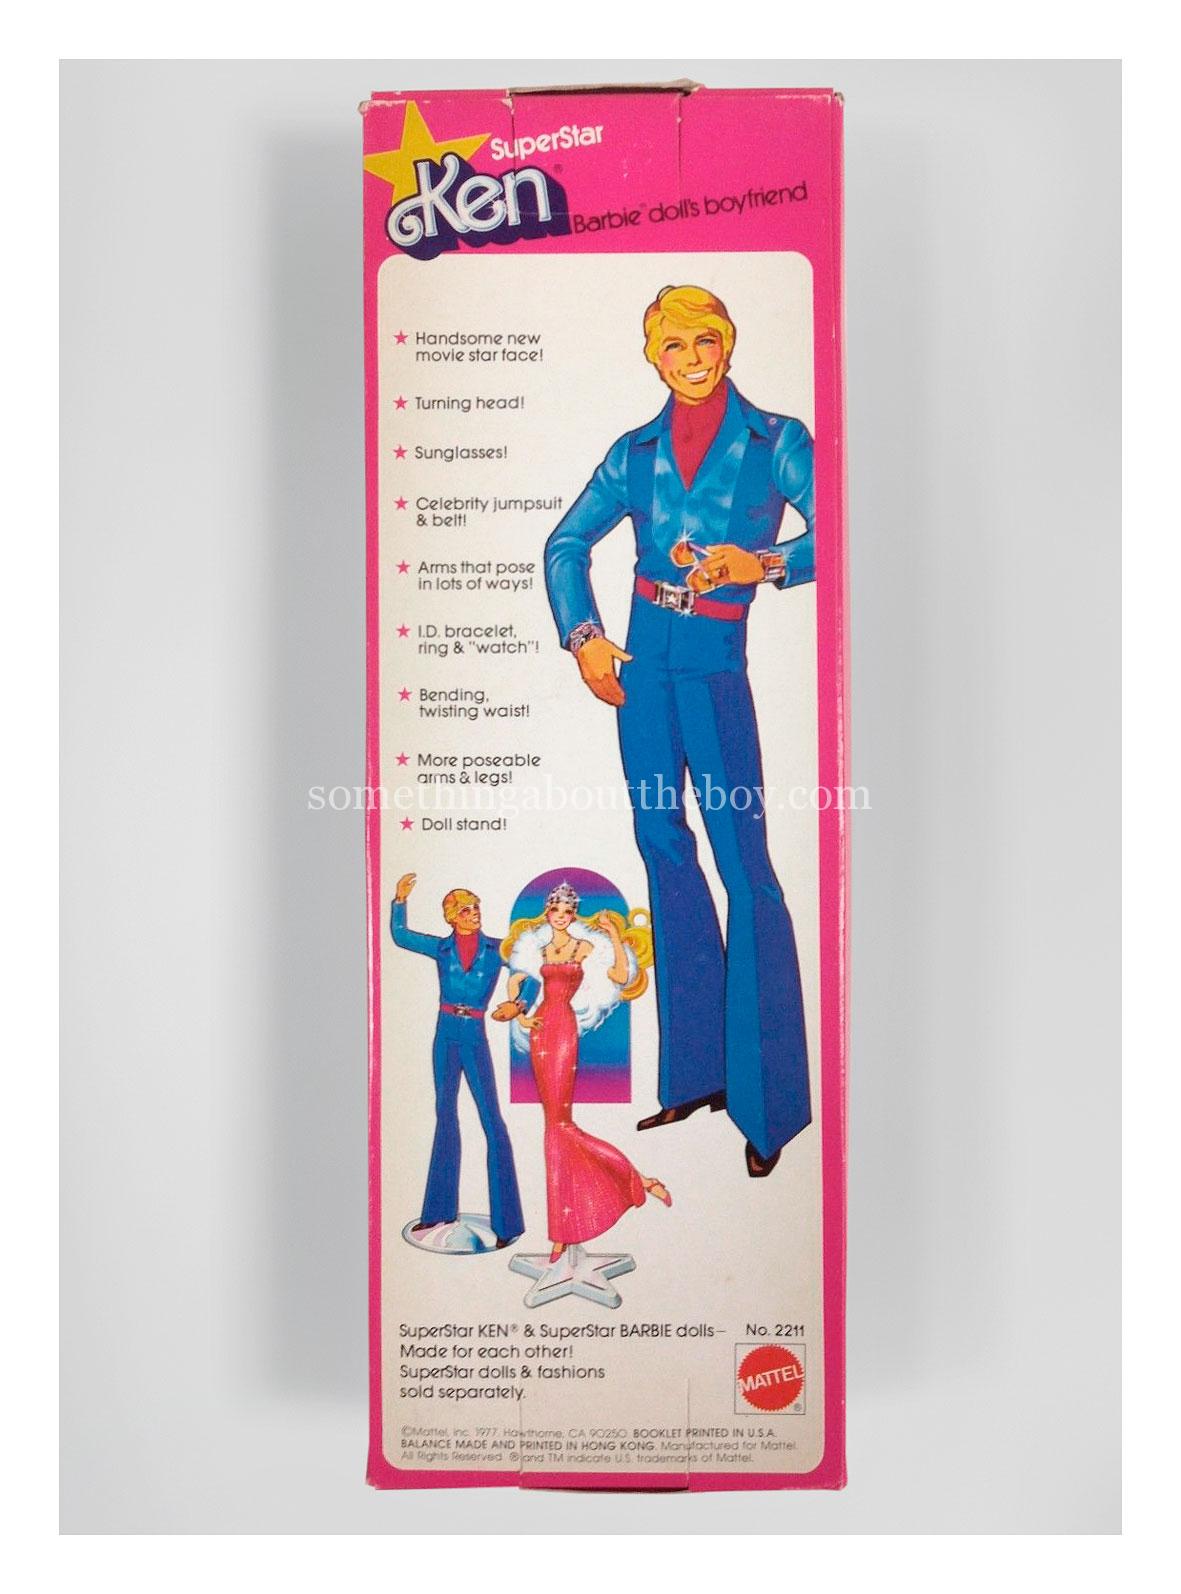 1978 #2211 SuperStar Ken original packaging